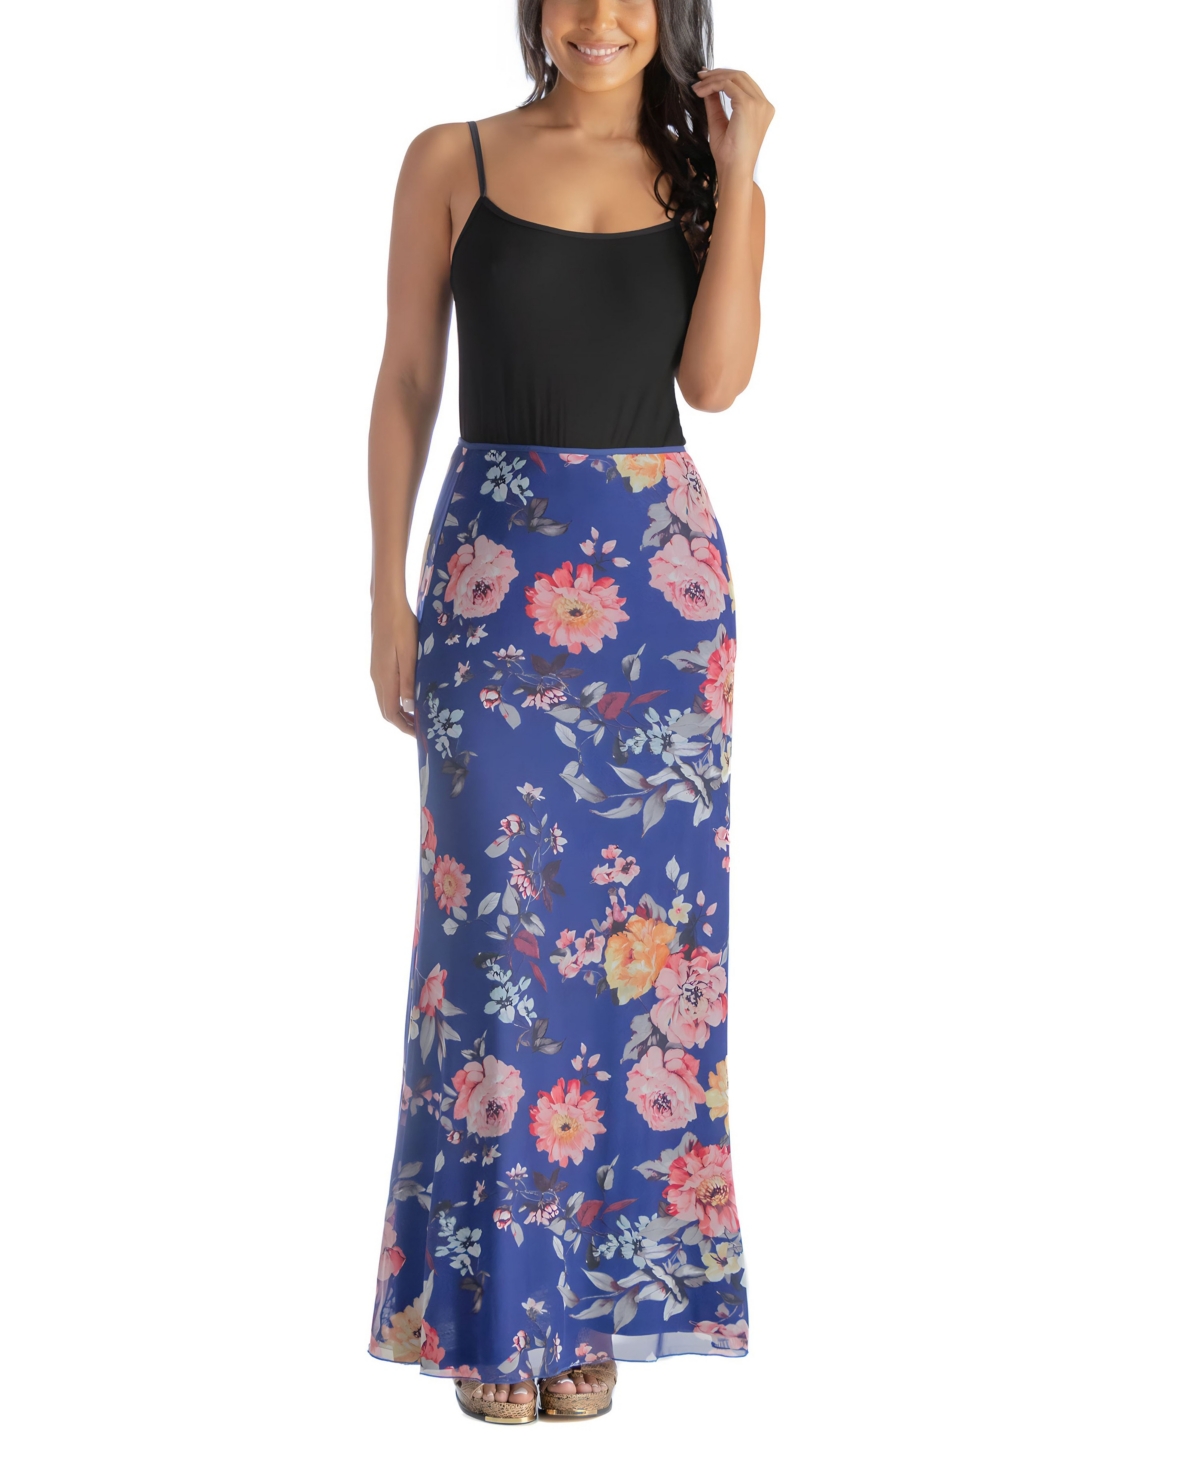 24seven Comfort Apparel Plus Size Sheer Overlay Elastic Waist Skirt In Blue Multi